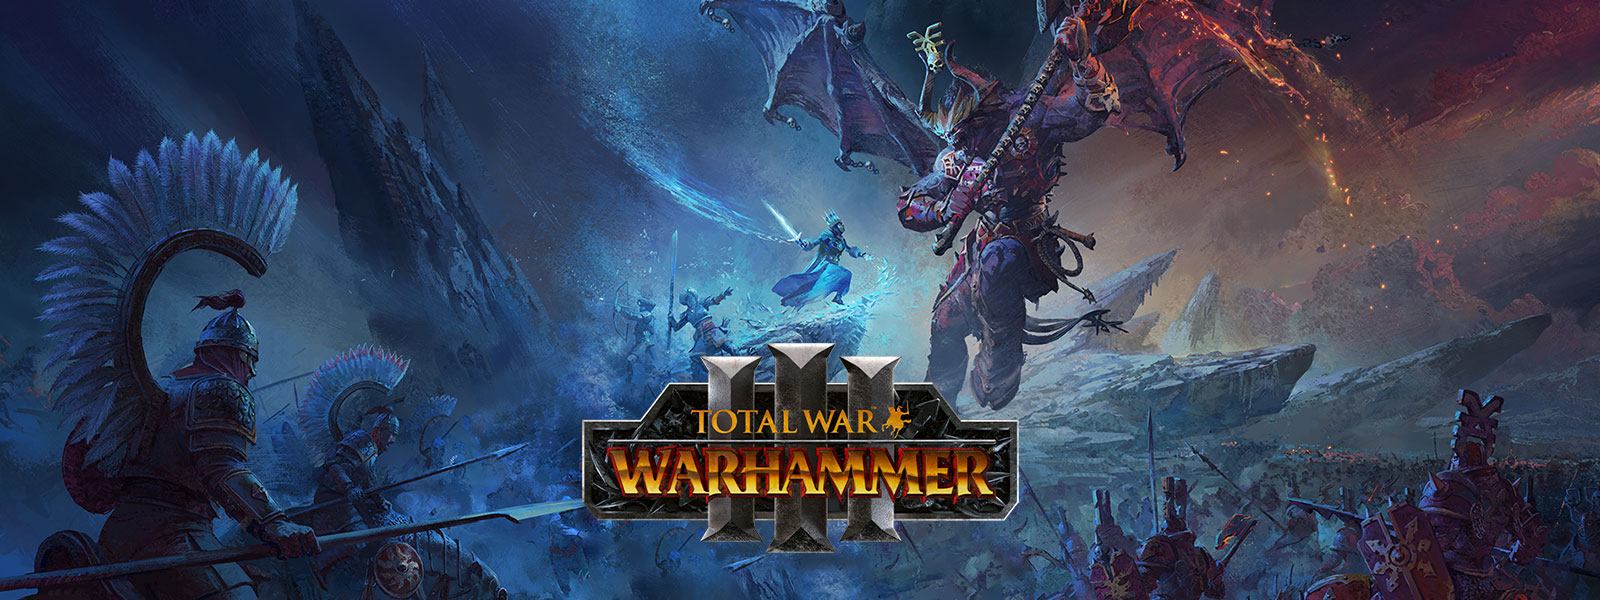 Total War Warhammer 3: Un magicien des glaces affronte un gigantesque dragon démoniaque au-dessus d’un champ de bataille.